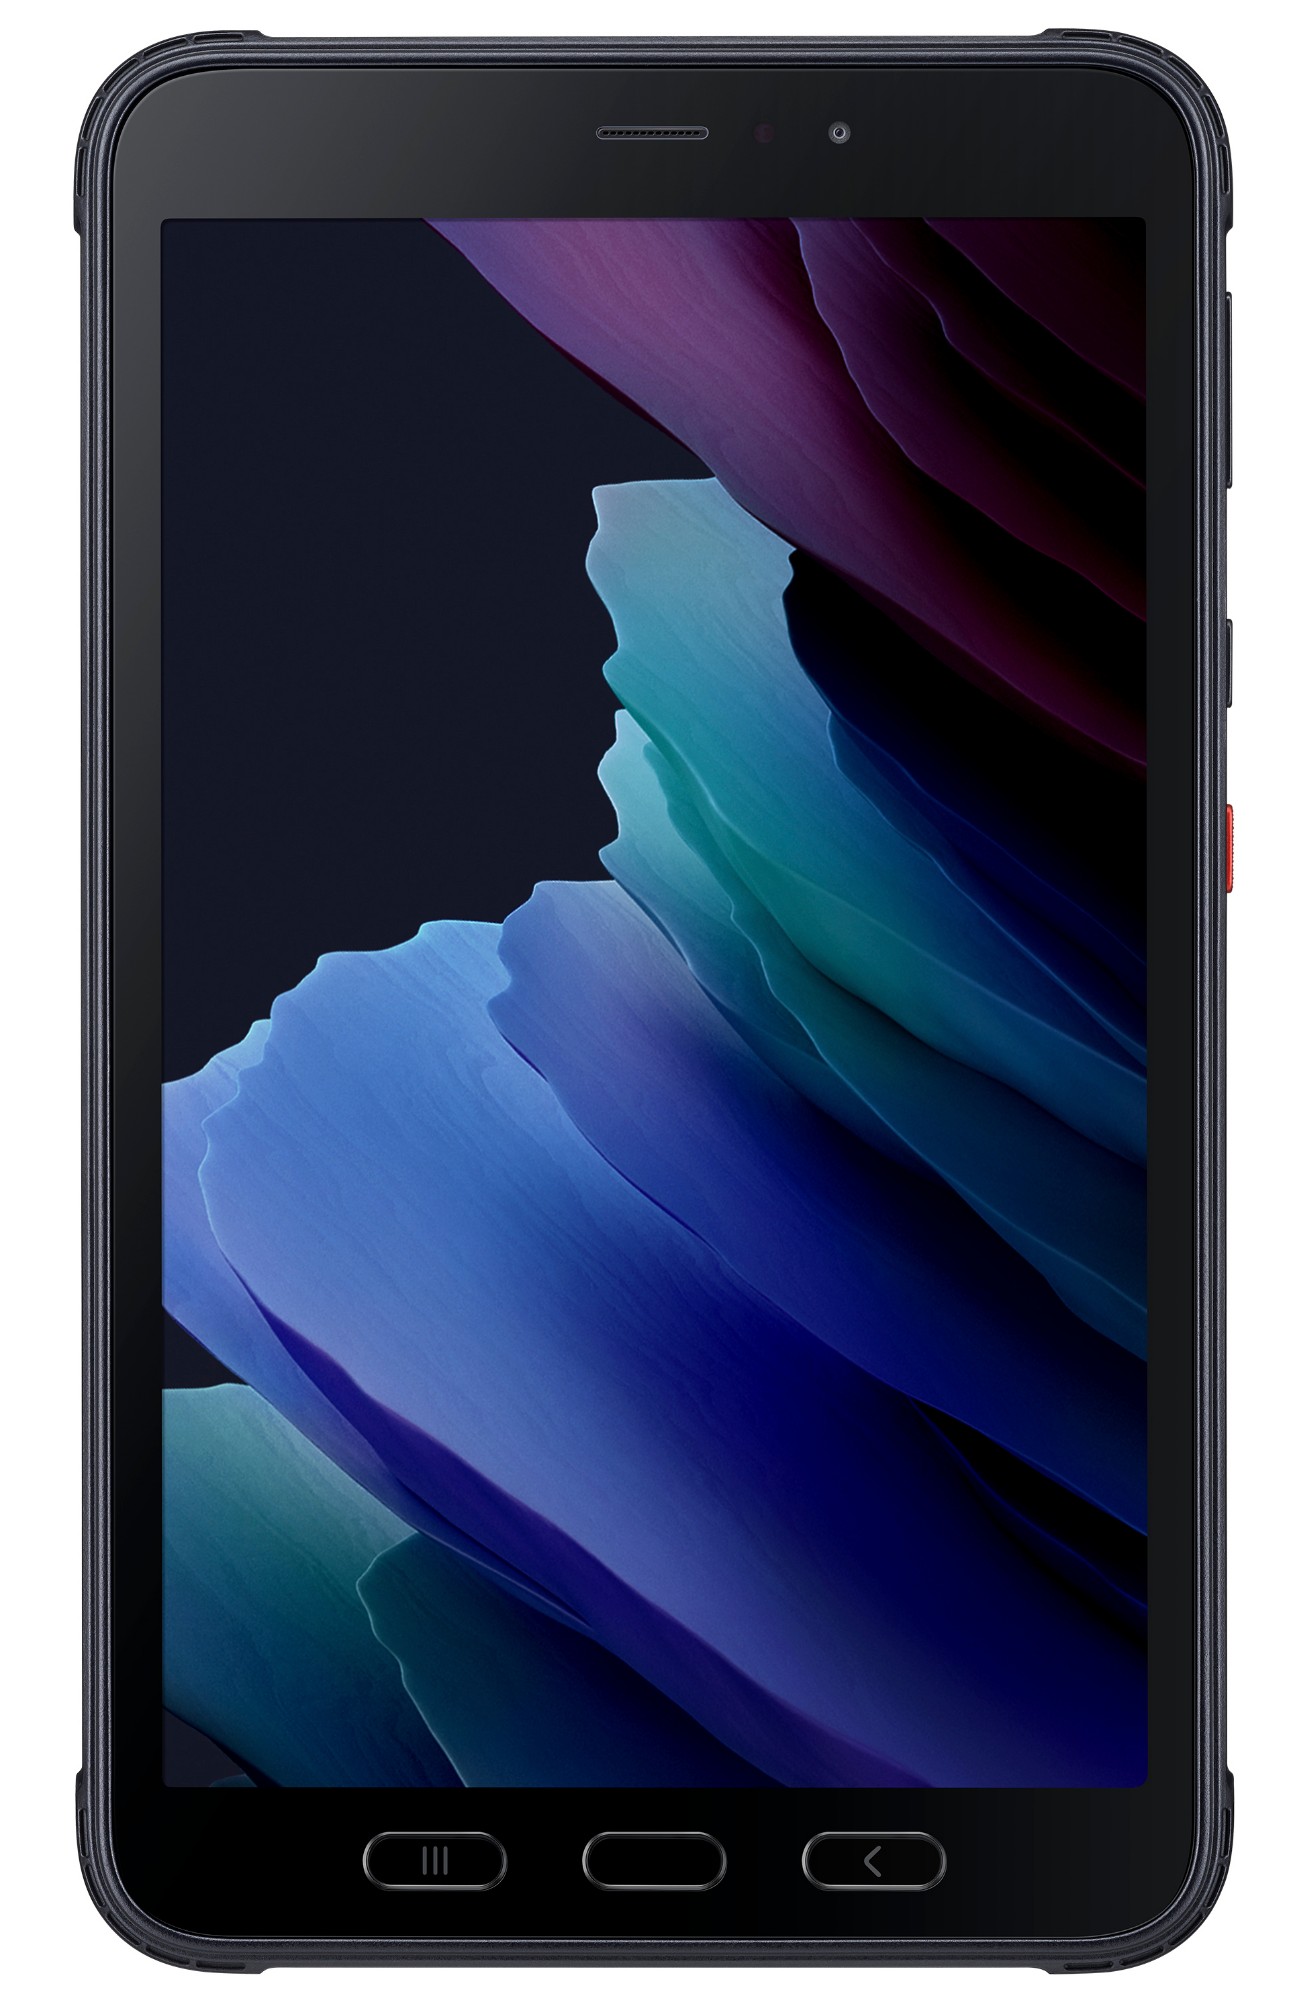 Samsung Galaxy Tab Active3 SM-T575N 4G LTE-TDD & LTE-FDD 64 GB 20.3 cm (8